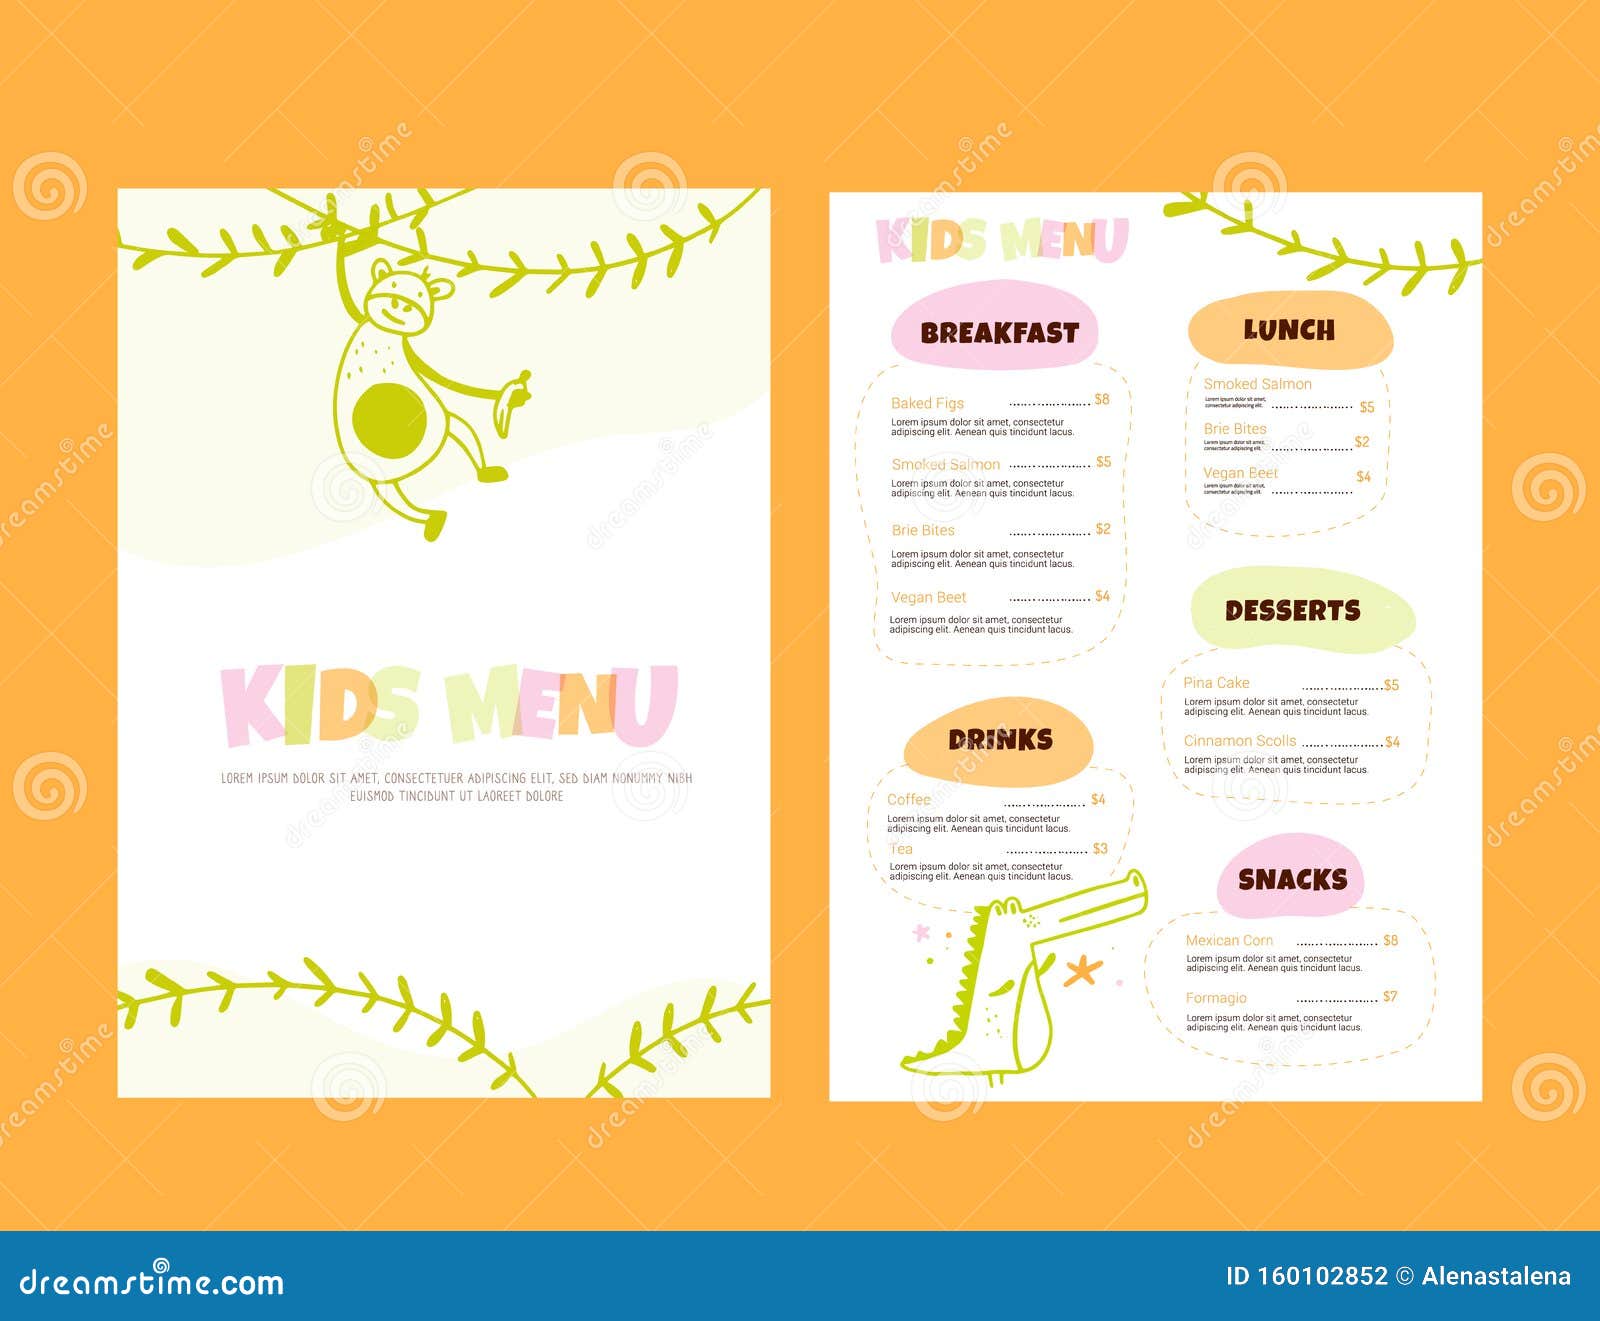 Thực đơn dành cho trẻ em thường thiết kế đơn giản, hấp dẫn và lôi cuốn. Hình ảnh trong thực đơn giúp trẻ hứng thú hơn với các món ăn và đồ uống, hãy xem ngay nhé.